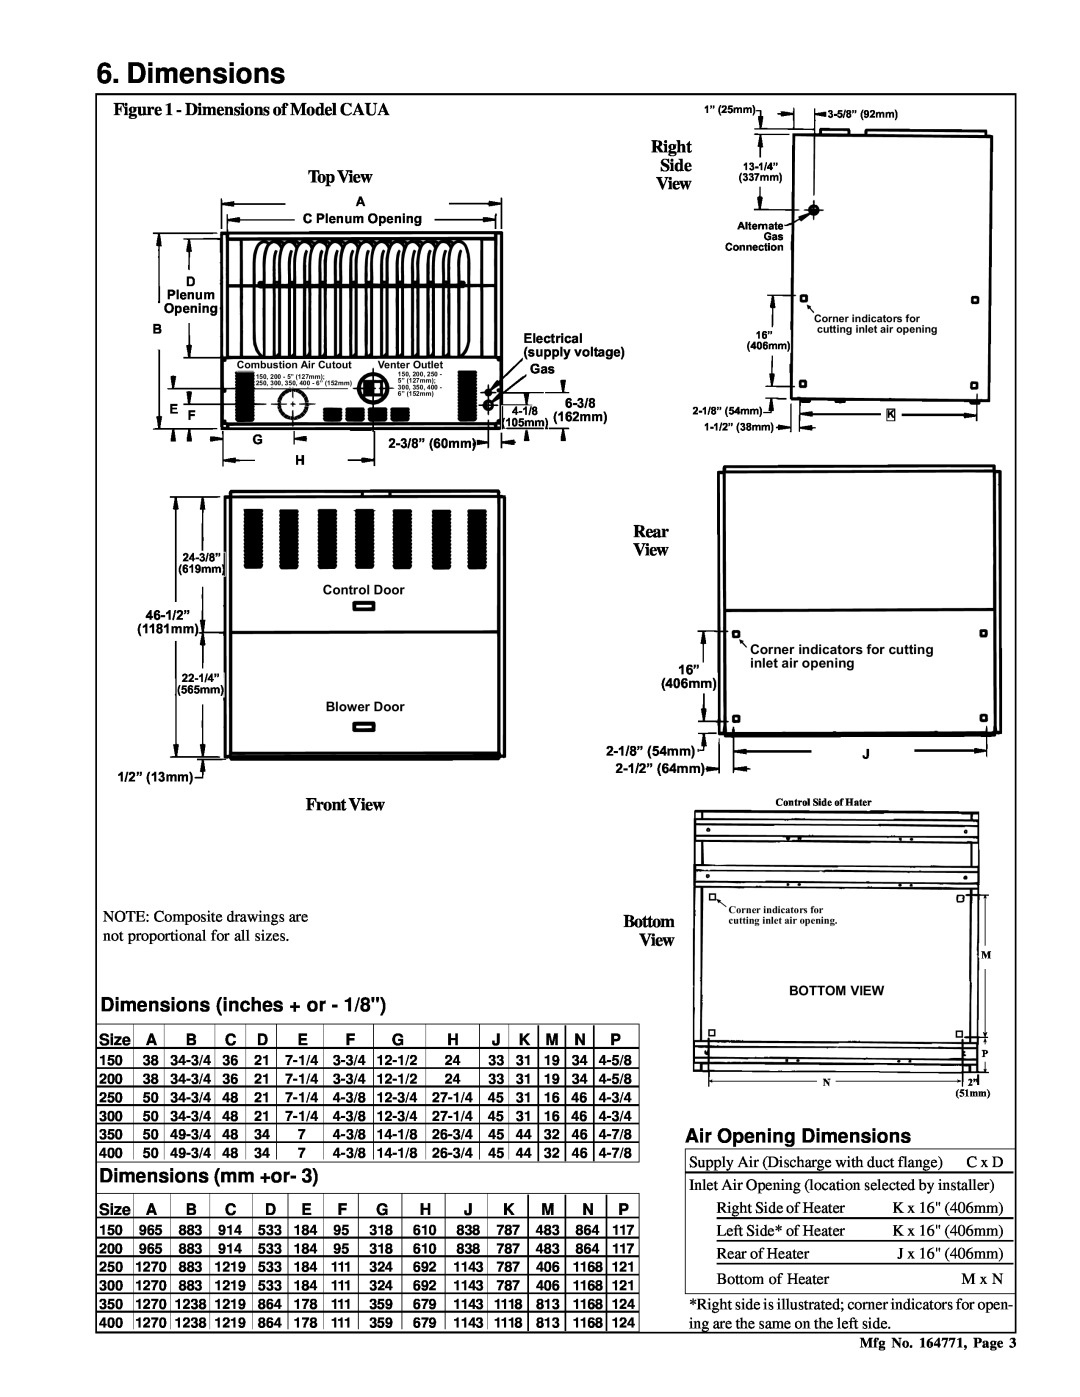 Thomas & Betts RZ405, RGM 405 dimensions Dimensions inches + or - 1/8, Dimensions mm +or, Air Opening Dimensions, Size 